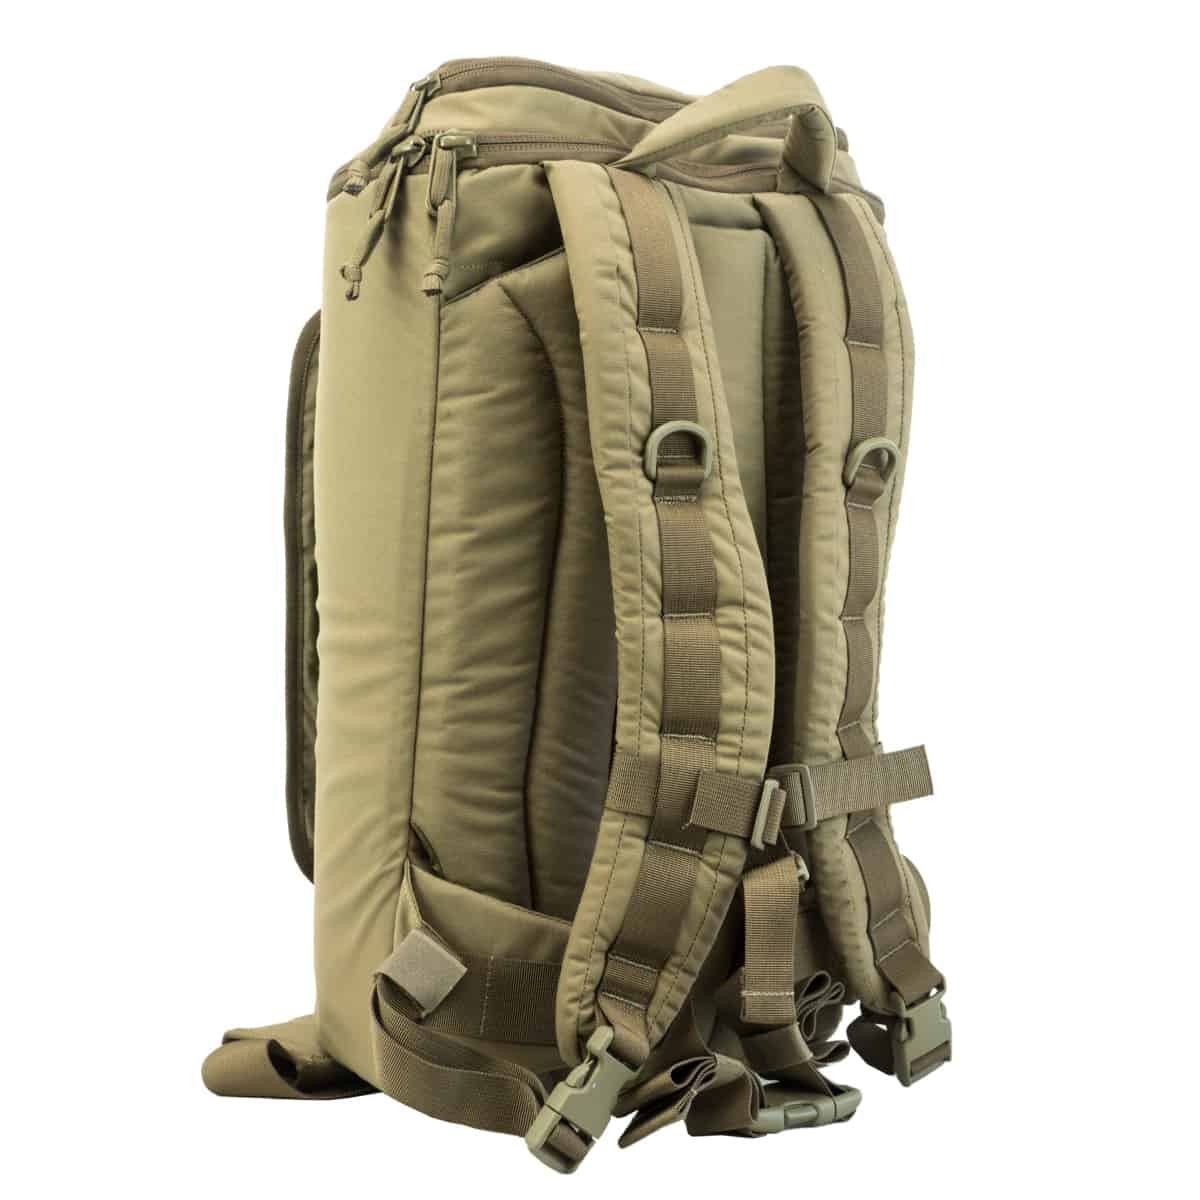 Izberite vrhunsko vojaško torbo za prenosnik Karrimor SF. Ta trpežna torba čez rame je idealna za vojaško opremo in taktične potrebe. Na voljo za prodajo.